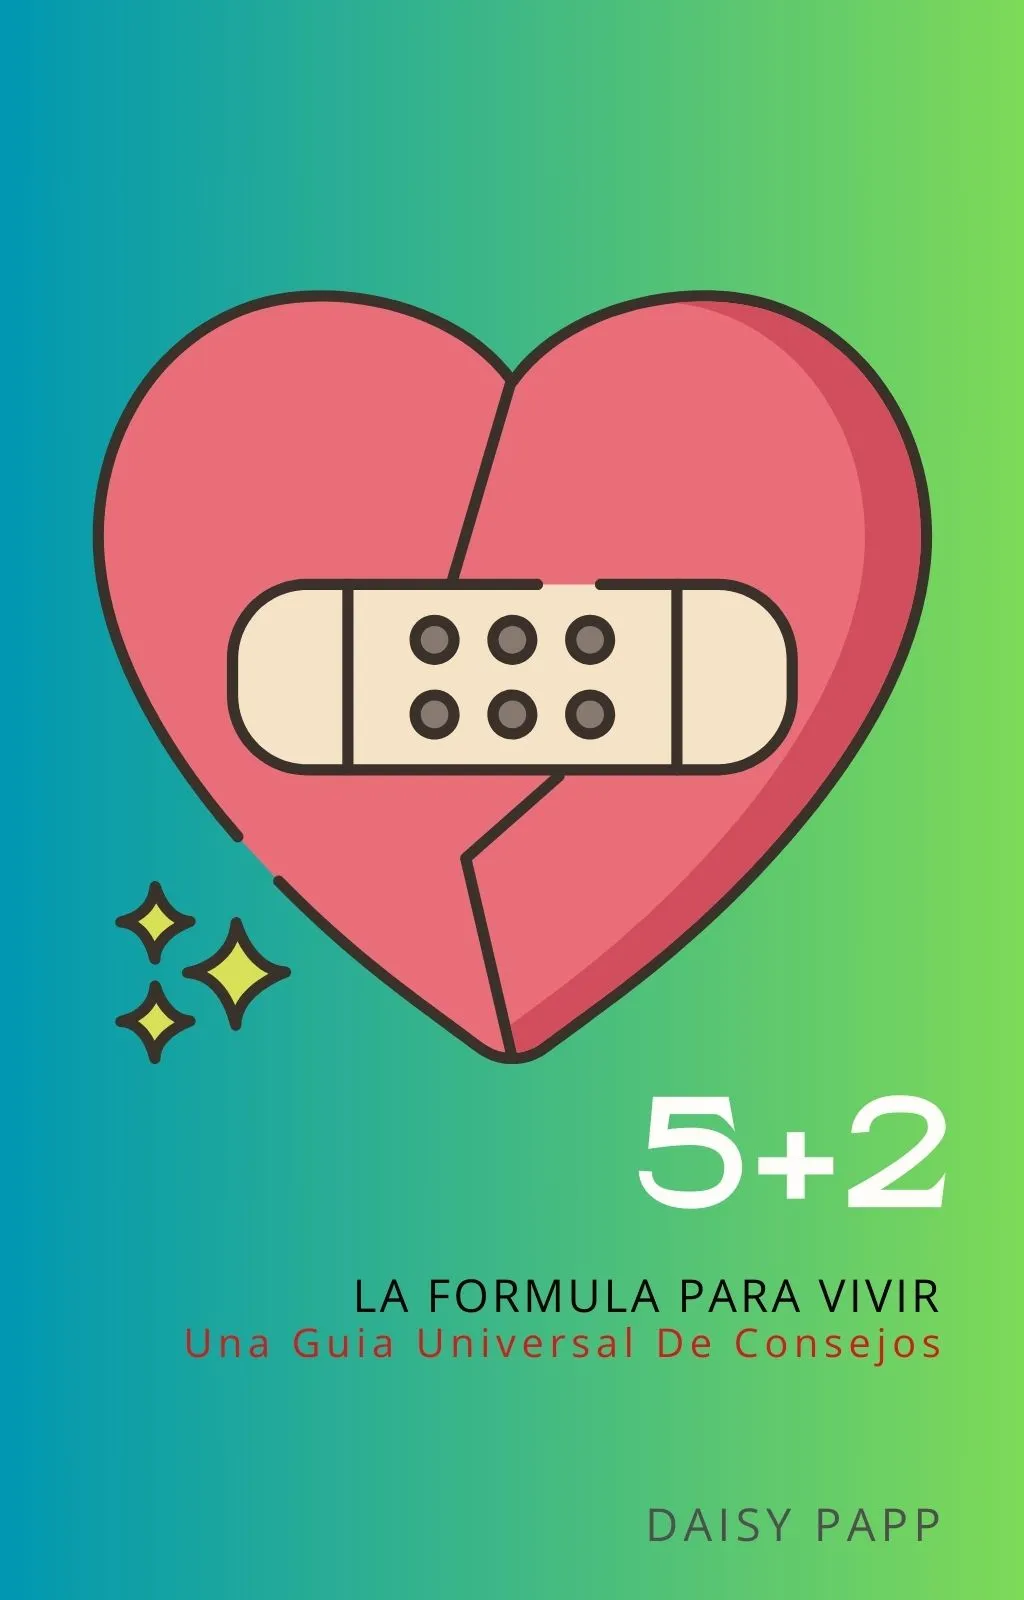 5+2: La formula para vivir